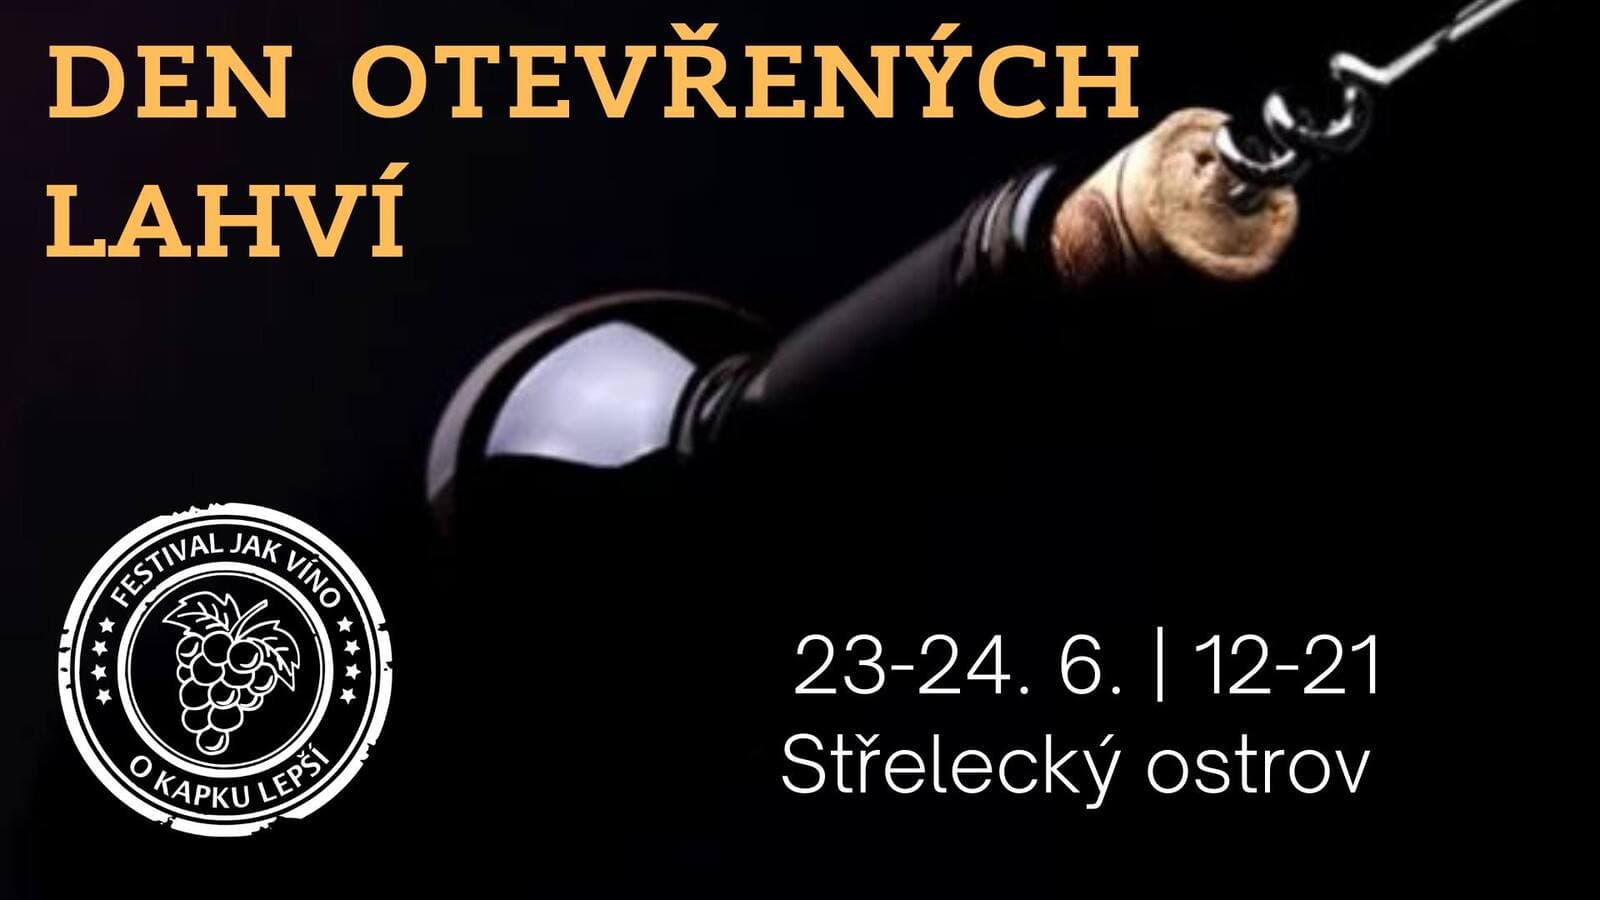 23 и 24 июня в Праге пройдет фестиваль вин Den otevřených lahví na střeláku